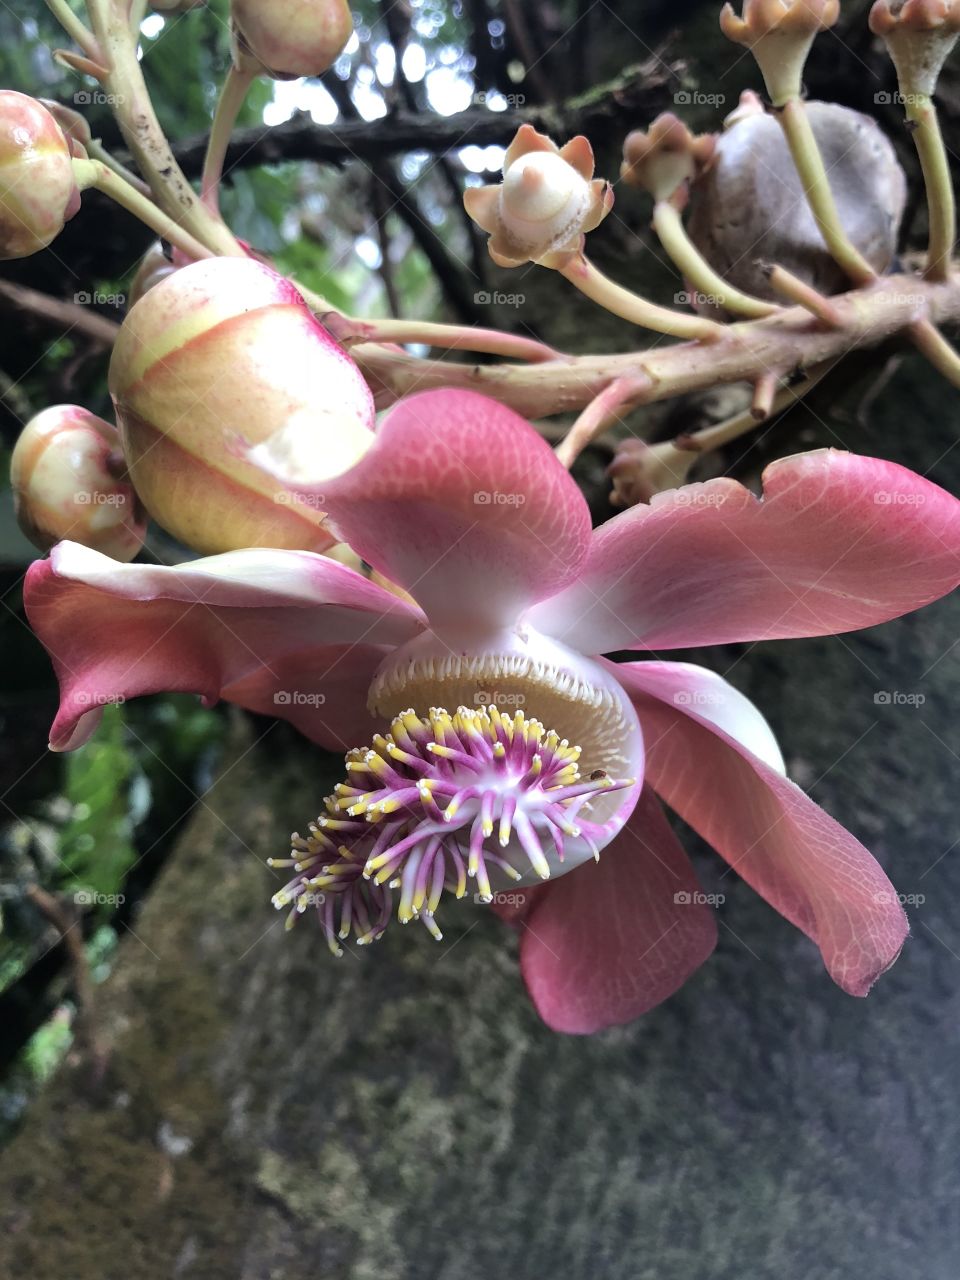 Exotic flower